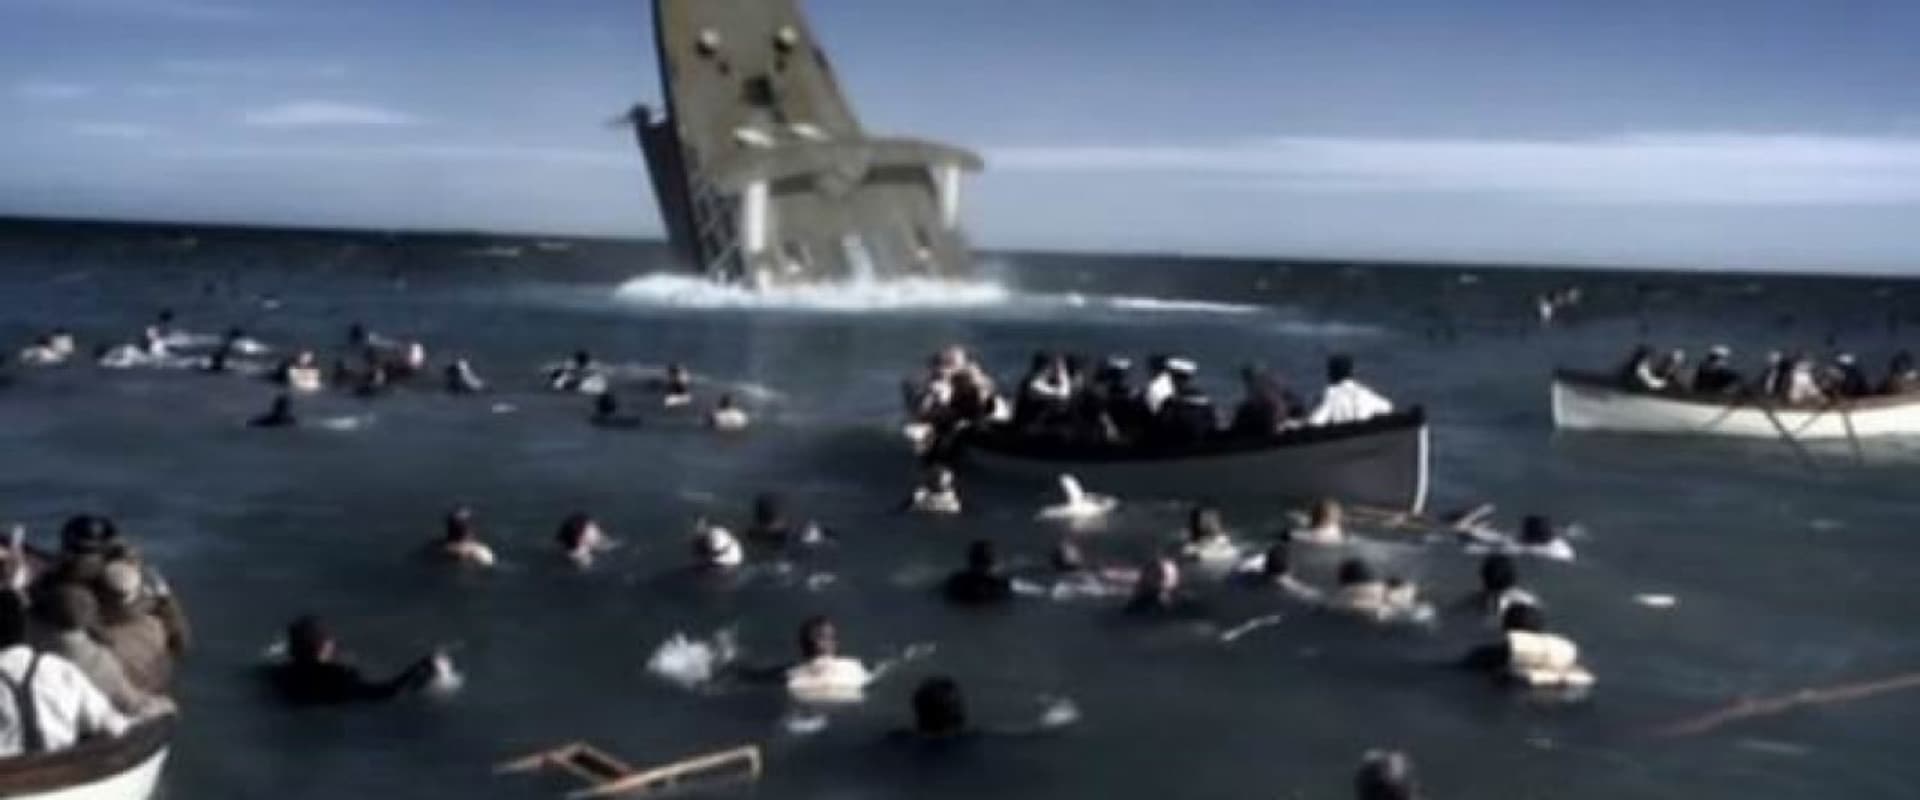 Sinking of the Lusitania: Terror at Sea